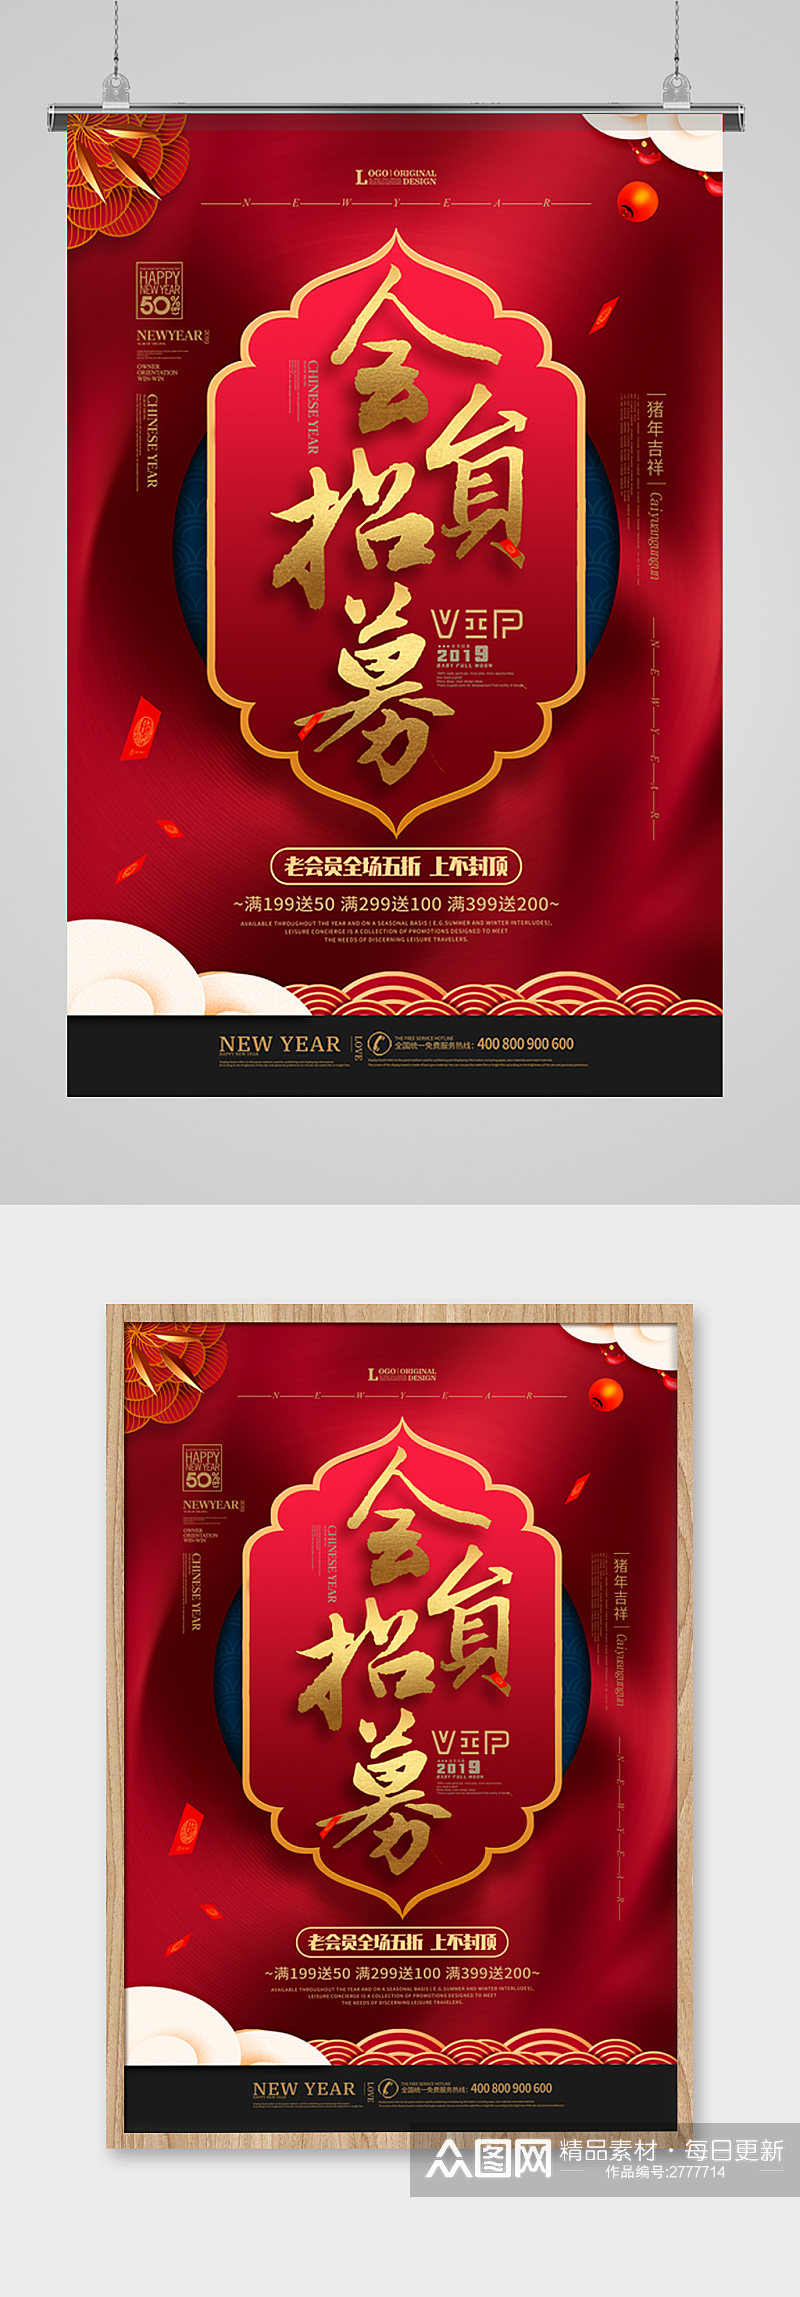 红色喜庆中国风海报背景设计招募海报设计素材